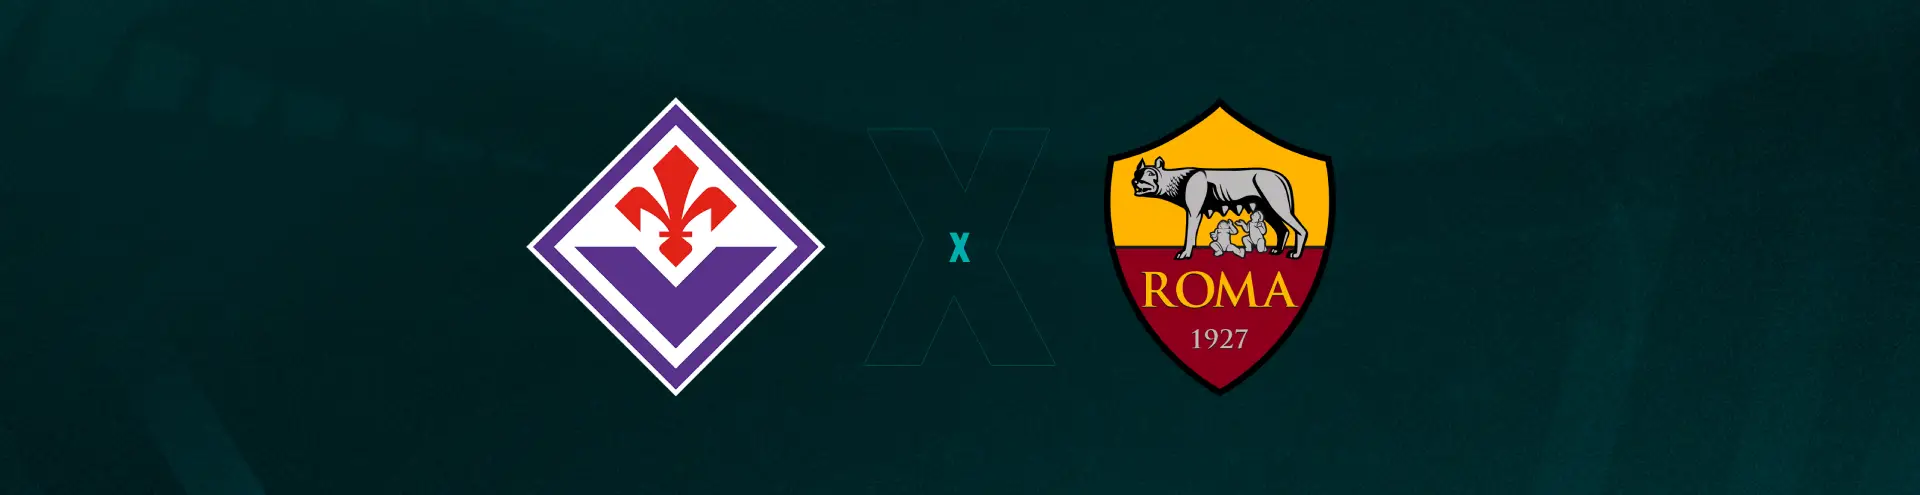 Palpite: Roma x Fiorentina – Campeonato Italiano (Série A) – 10/12